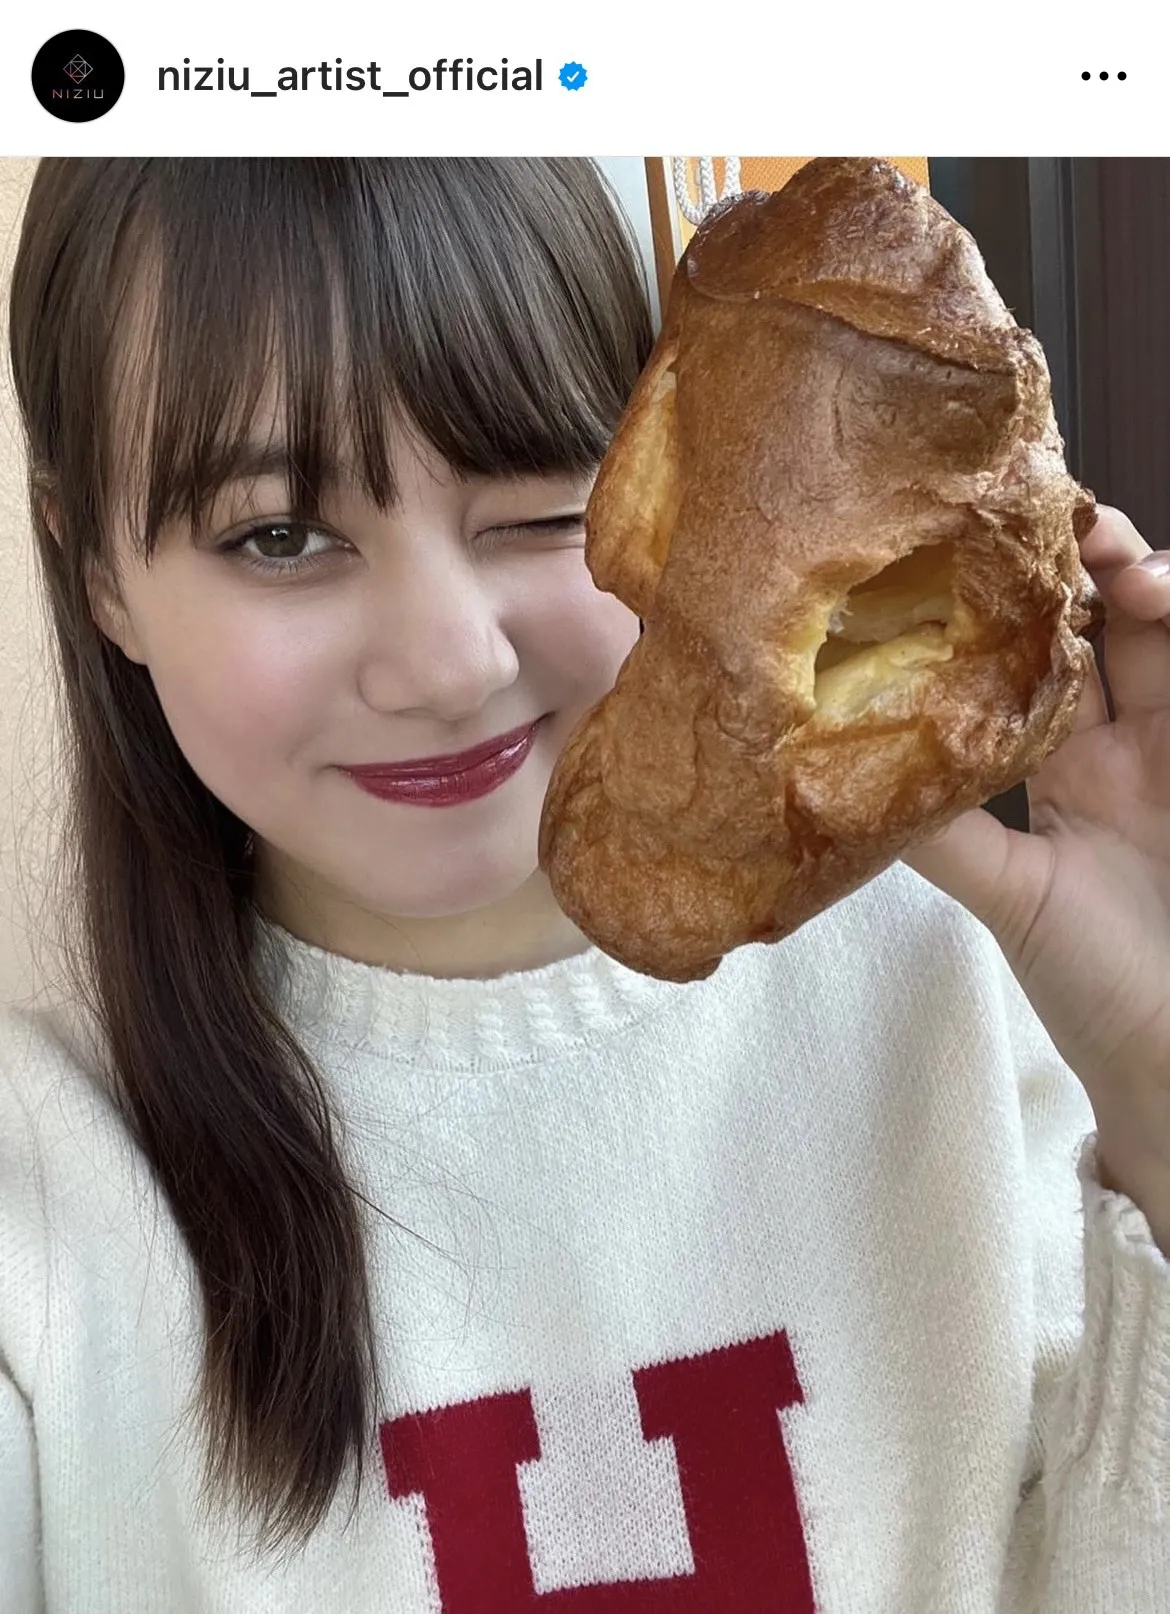 「パンが顔の大きさでうける笑笑」NiziU・ニナ、18歳の誕生日に食事を楽しむ様子公開